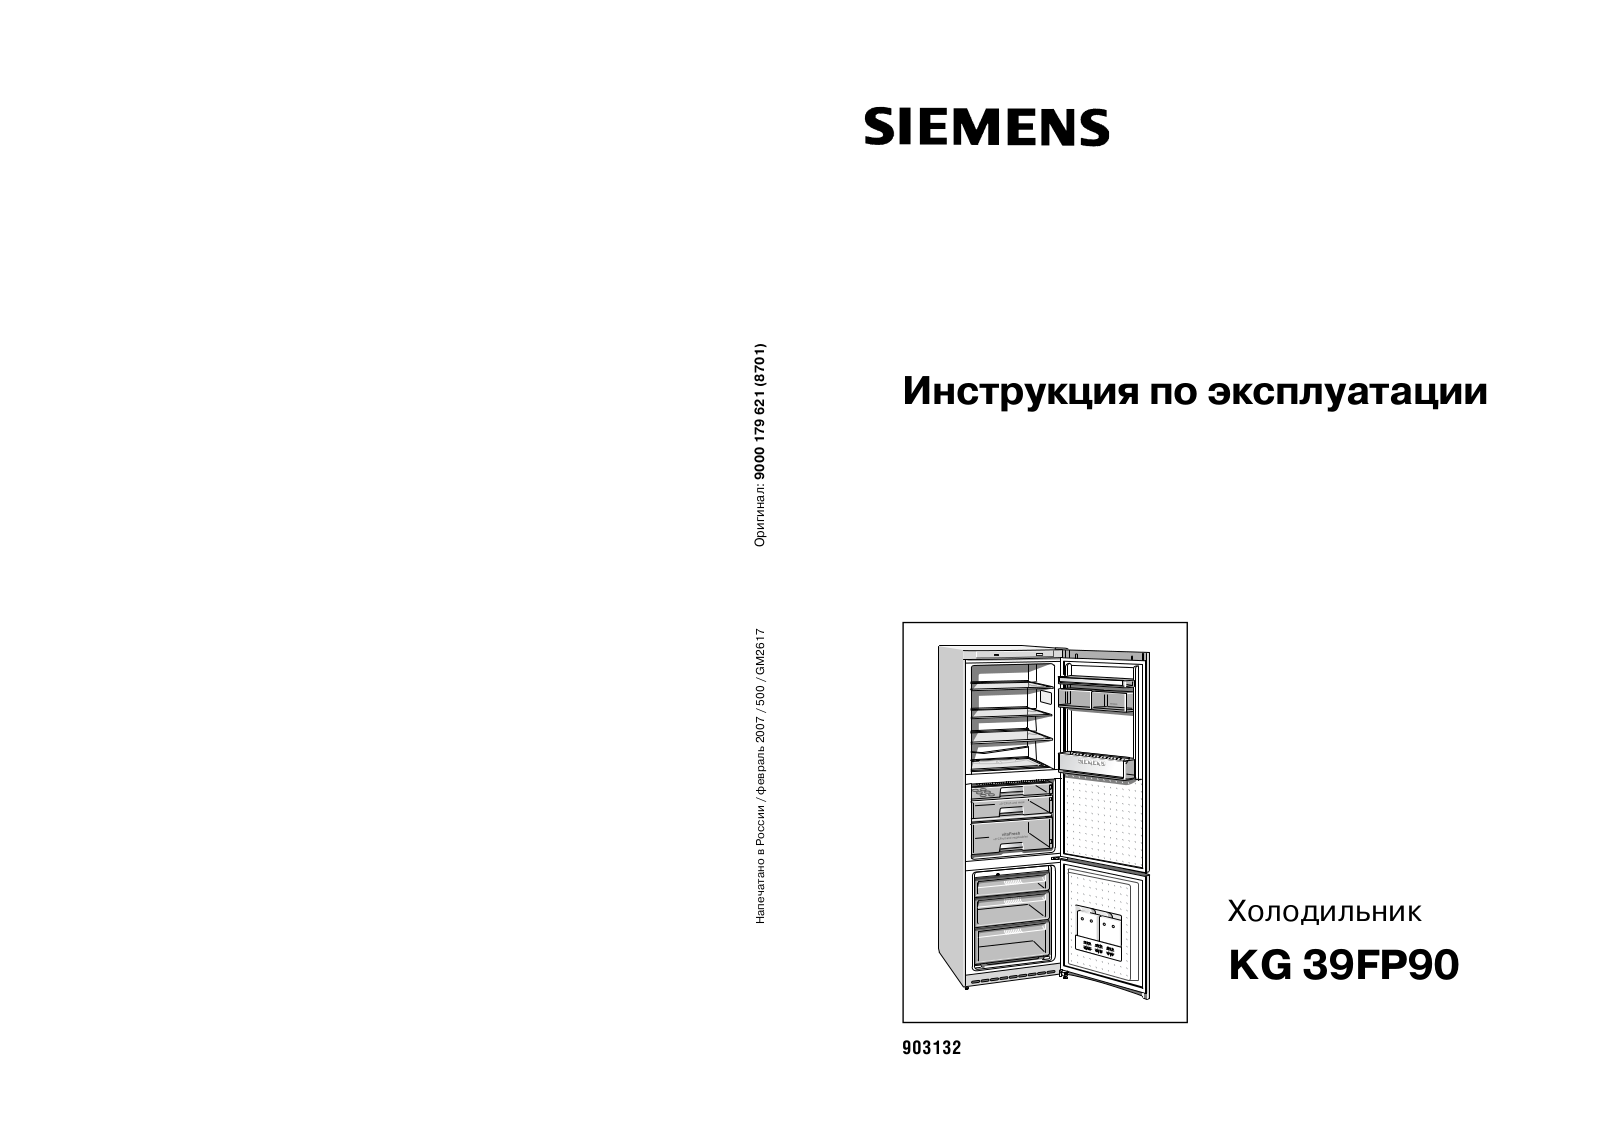 SIEMENS KG 39FP90 User Manual